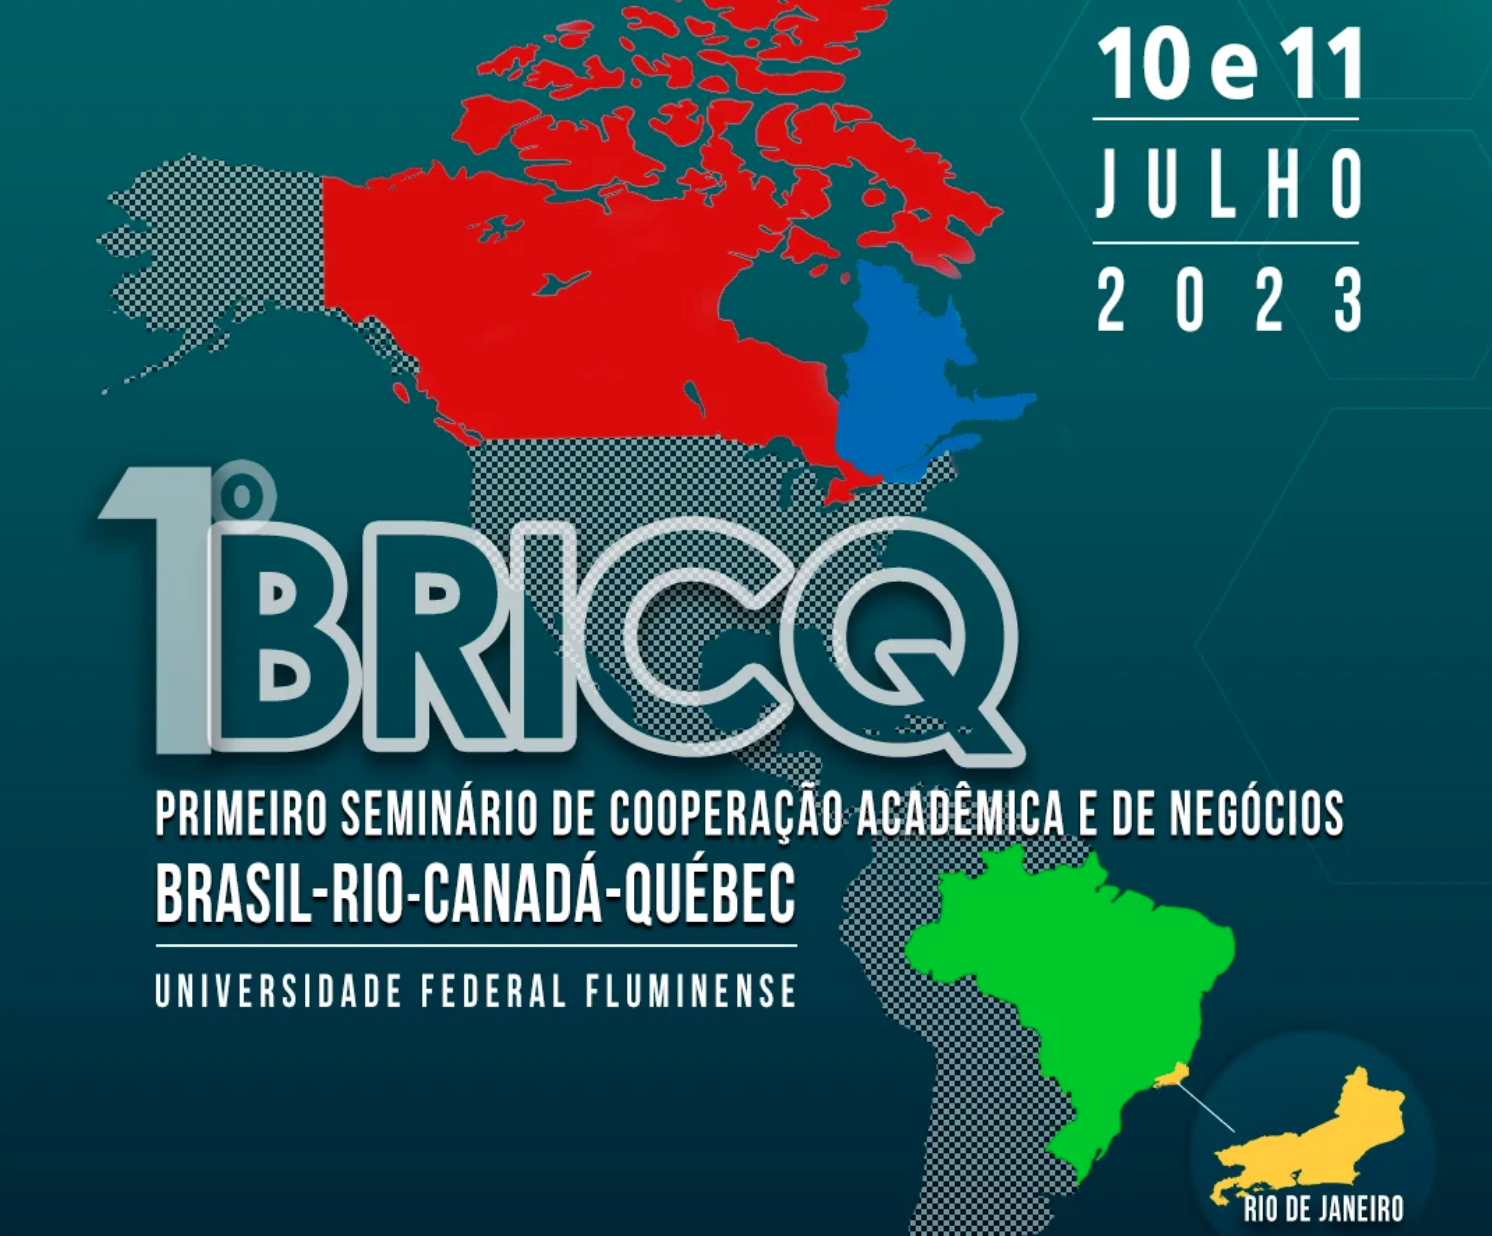 Premier séminaire de coopération académique et d'affaires Brésil-Rio-Canada-Québec (BRICQ) : Construire des ponts et des connaissances mutuelles en Amérique latine et dans les Caraïbes